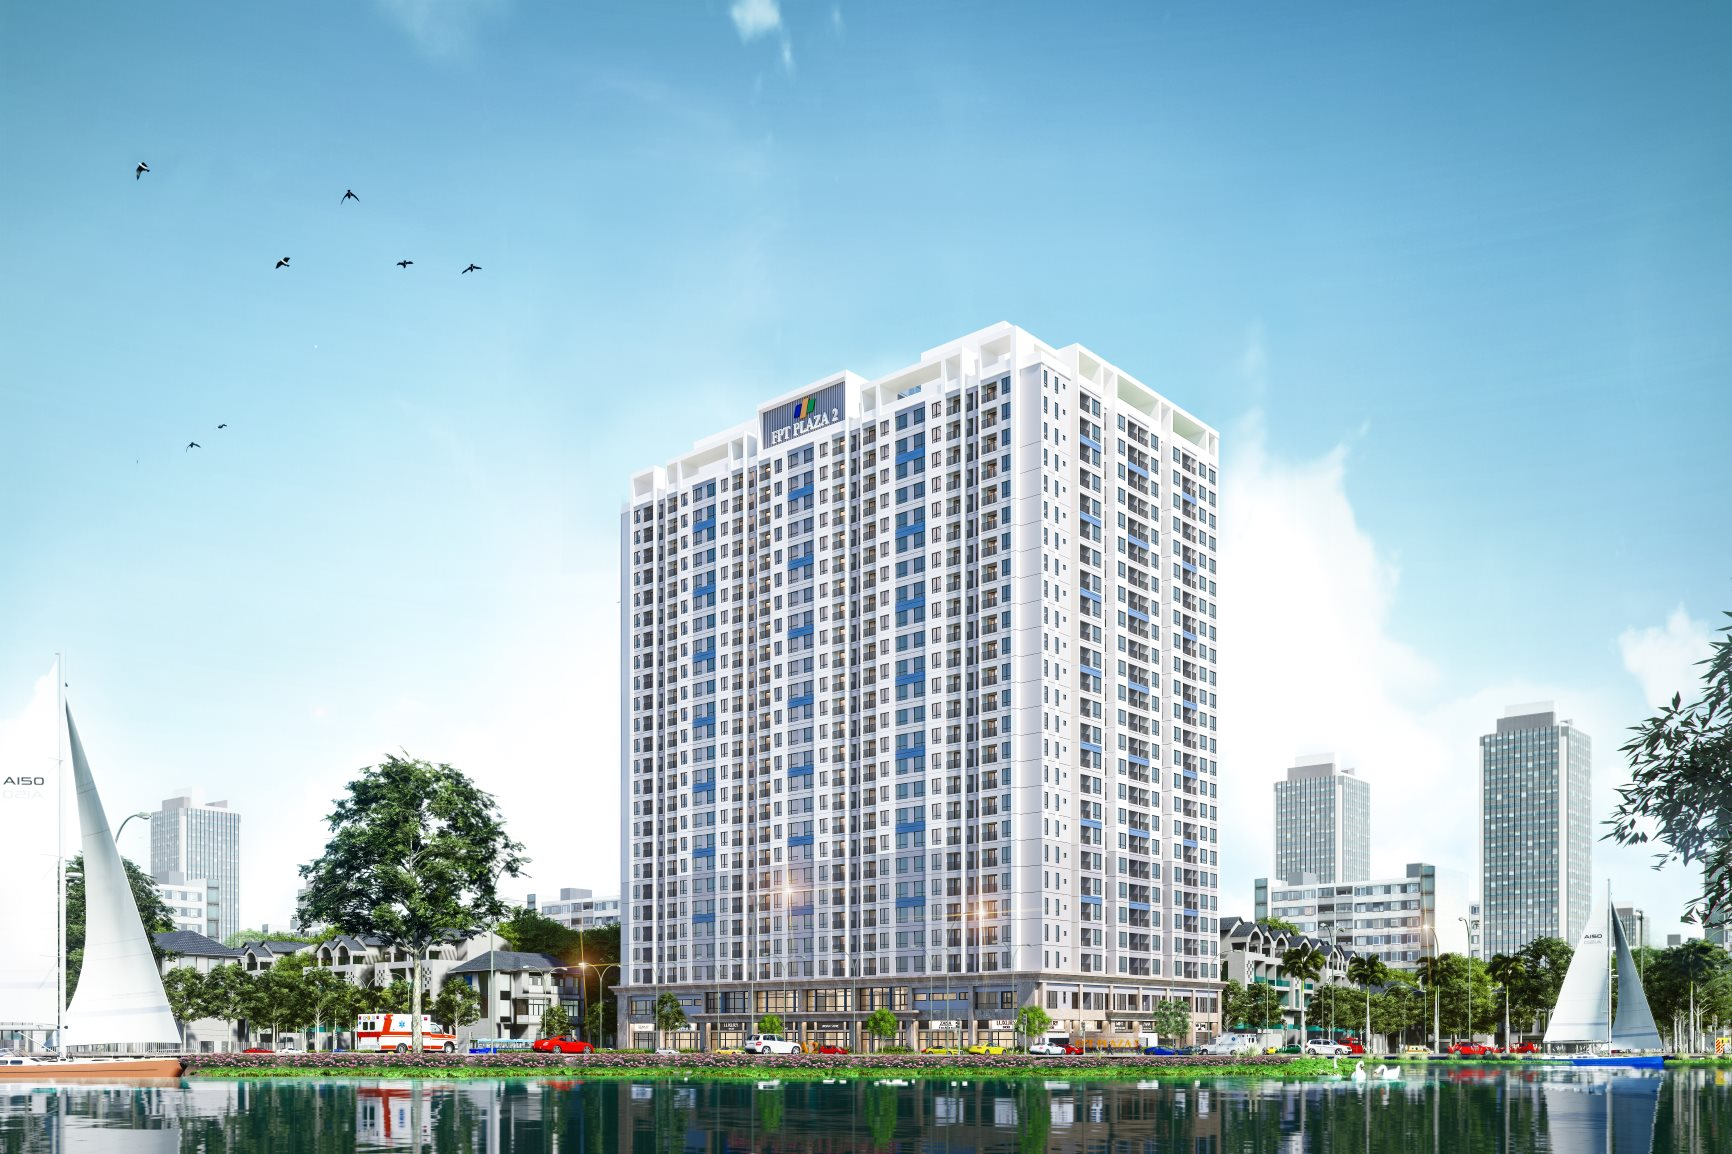 FPT City bán hết 699/700 căn hộ chỉ trong vòng 6 tháng, sắp khởi công toà chung cư FPT Plaza 3 với 860 căn hộ - Ảnh 1.